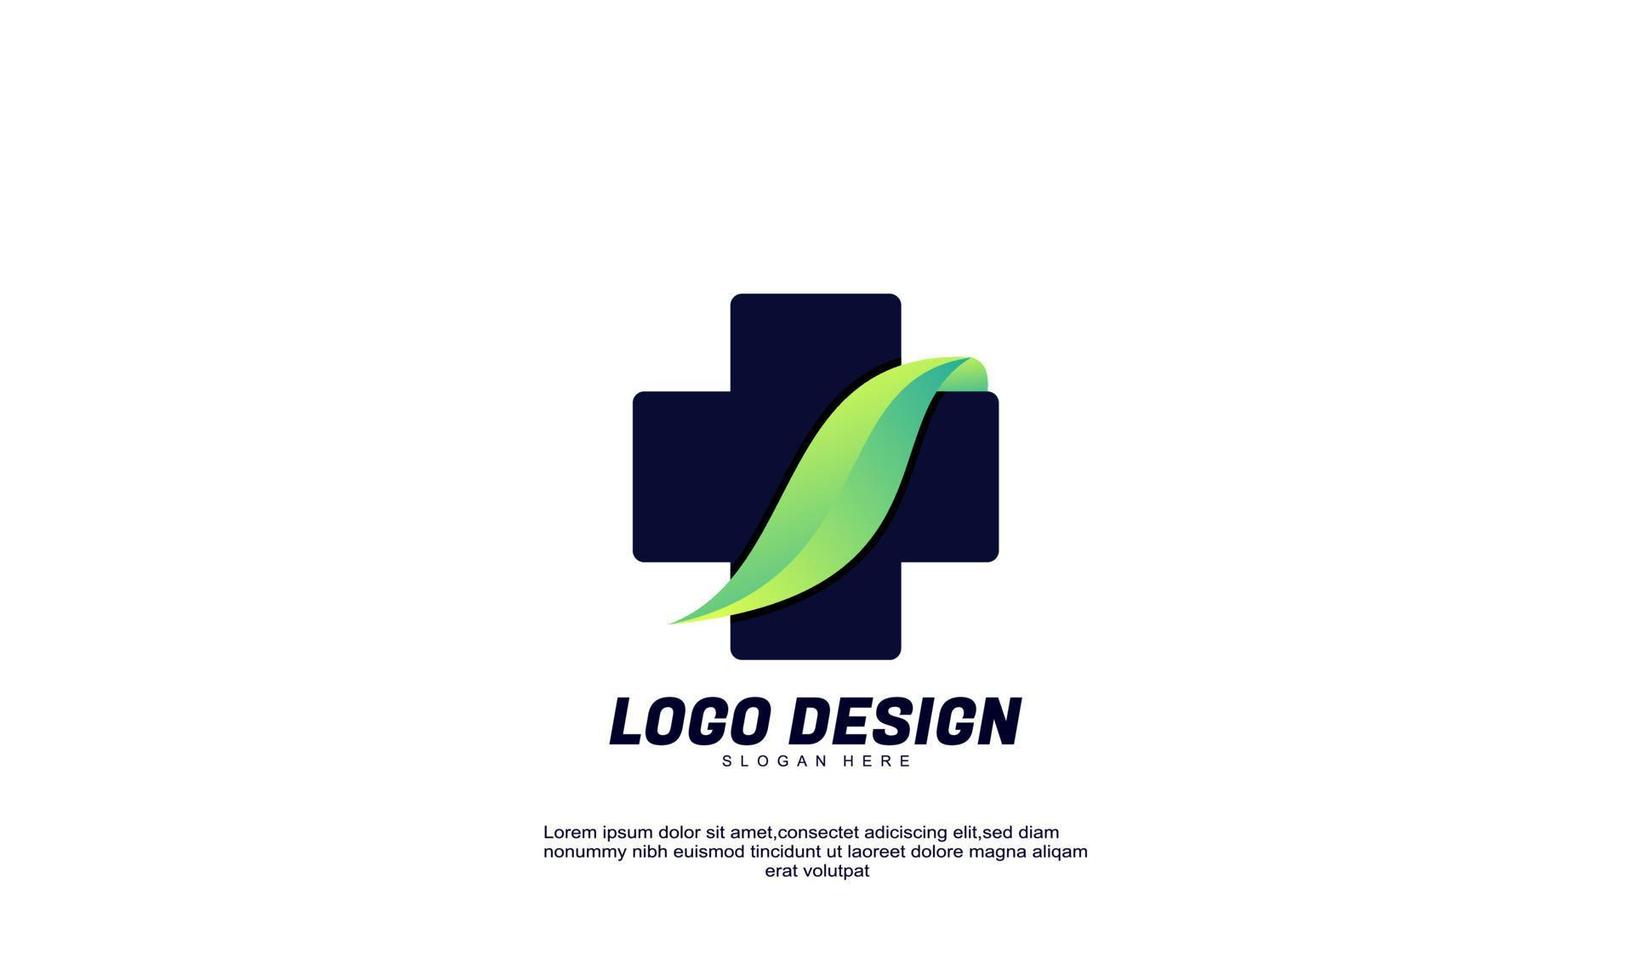 ehrfürchtiges kreatives logo medizinische apotheke für gesundes unternehmen und bunte designvorlage des geschäfts vektor